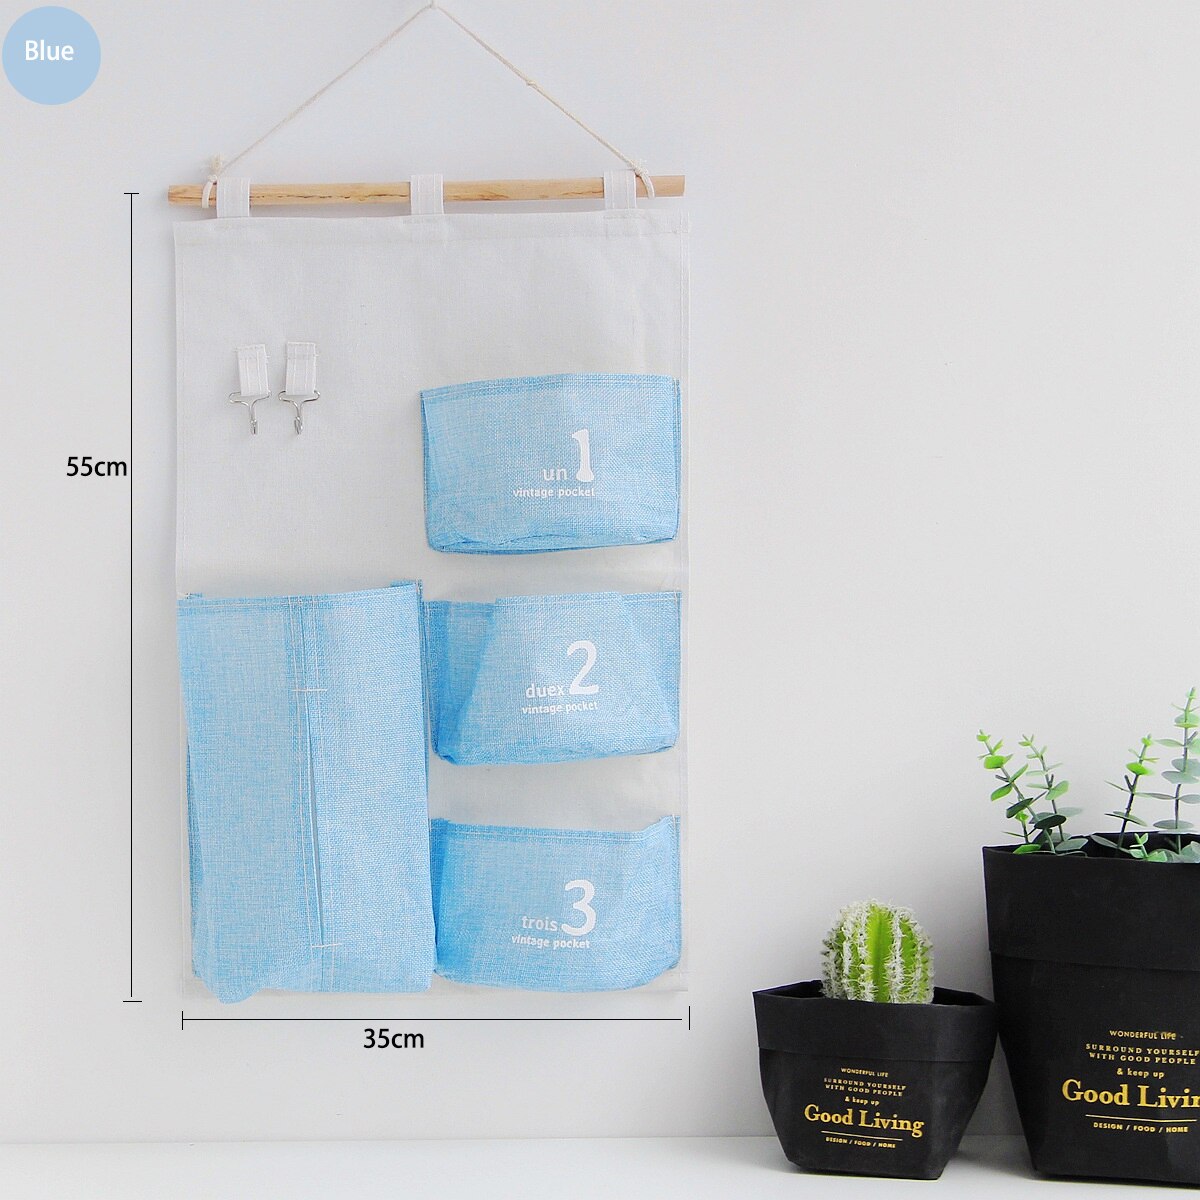 9 lommer væghængende organisator taske hjem opbevaring hængende tasker til garderobe soveværelse køkken badeværelse nøgler legetøjsvæv organisering: Blå -4 lommer